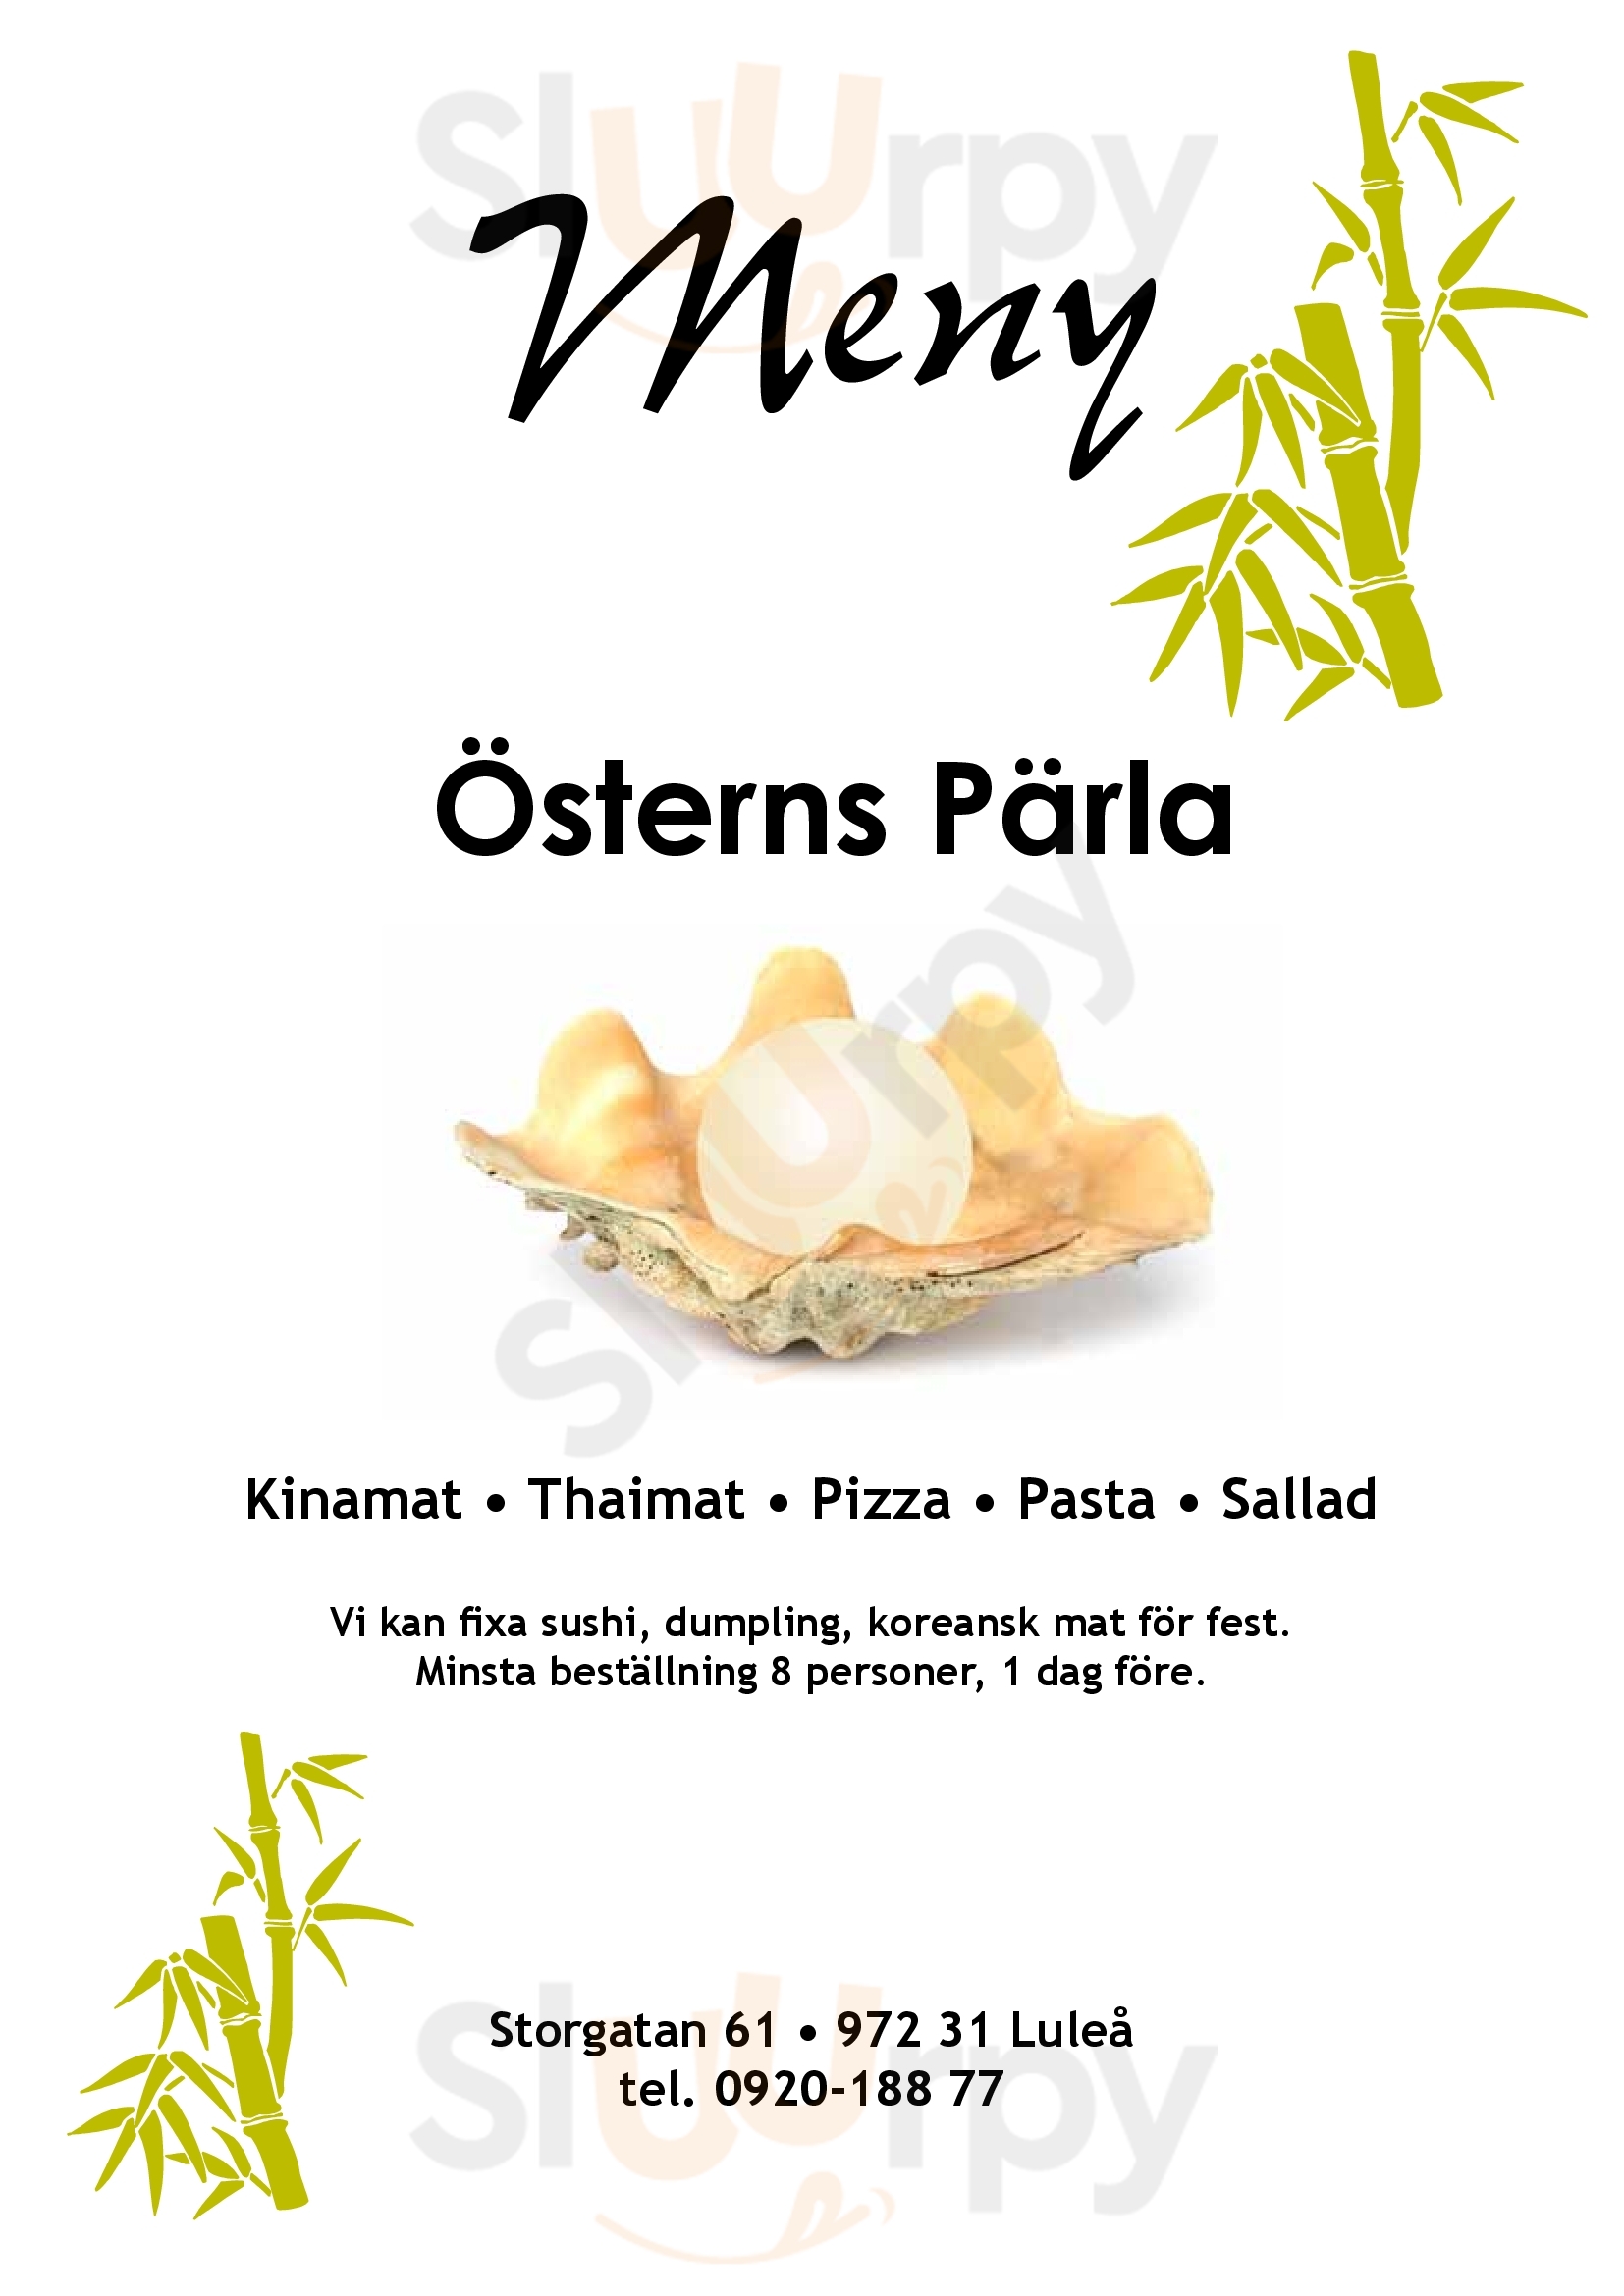 Restaurang Osterns Parla Luleå Menu - 1